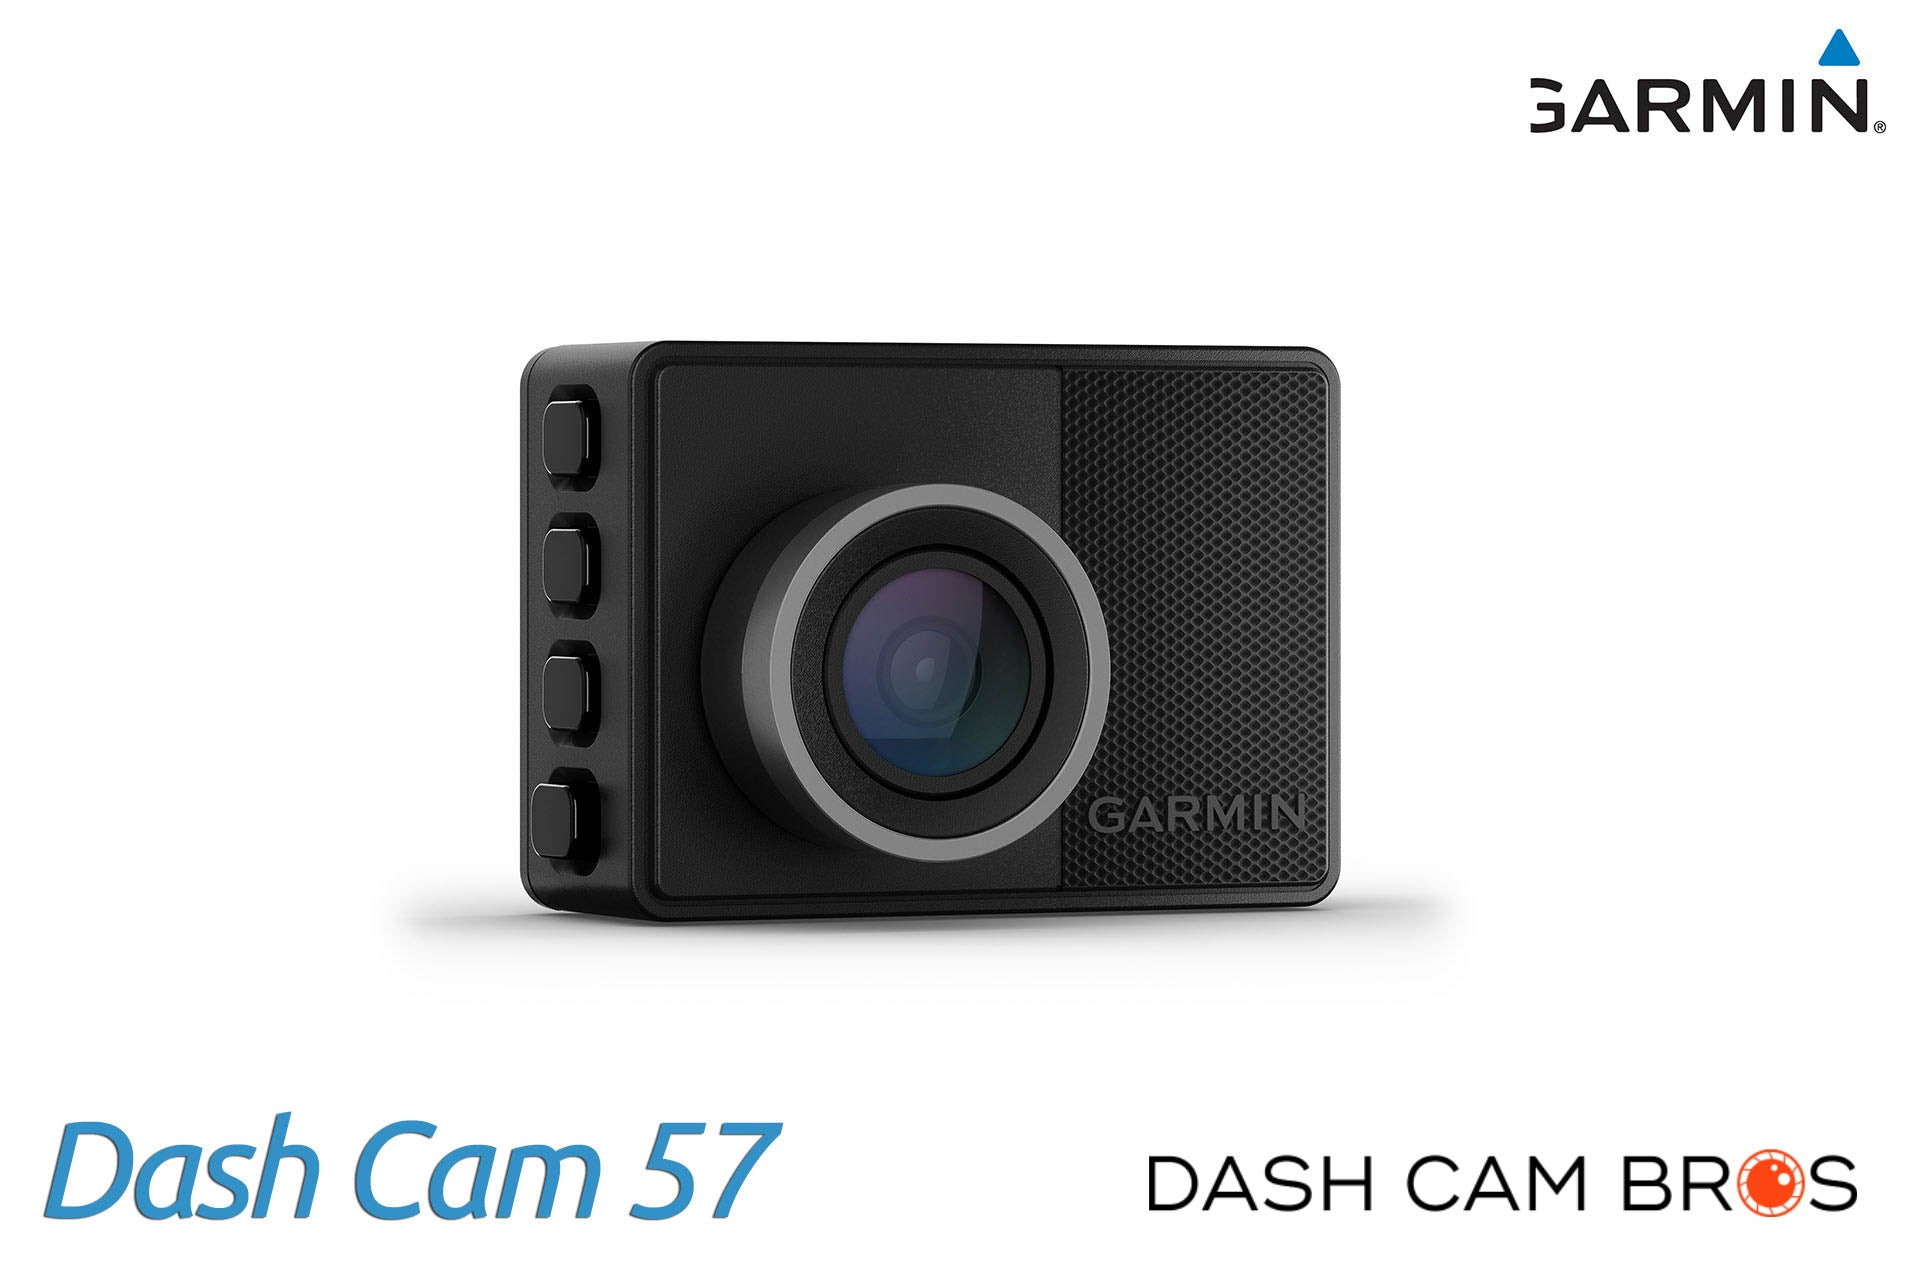 http://dashcambros.com/cdn/shop/products/dashcambros.com-garmin-dash-cam-57-1.jpg?v=1624031283